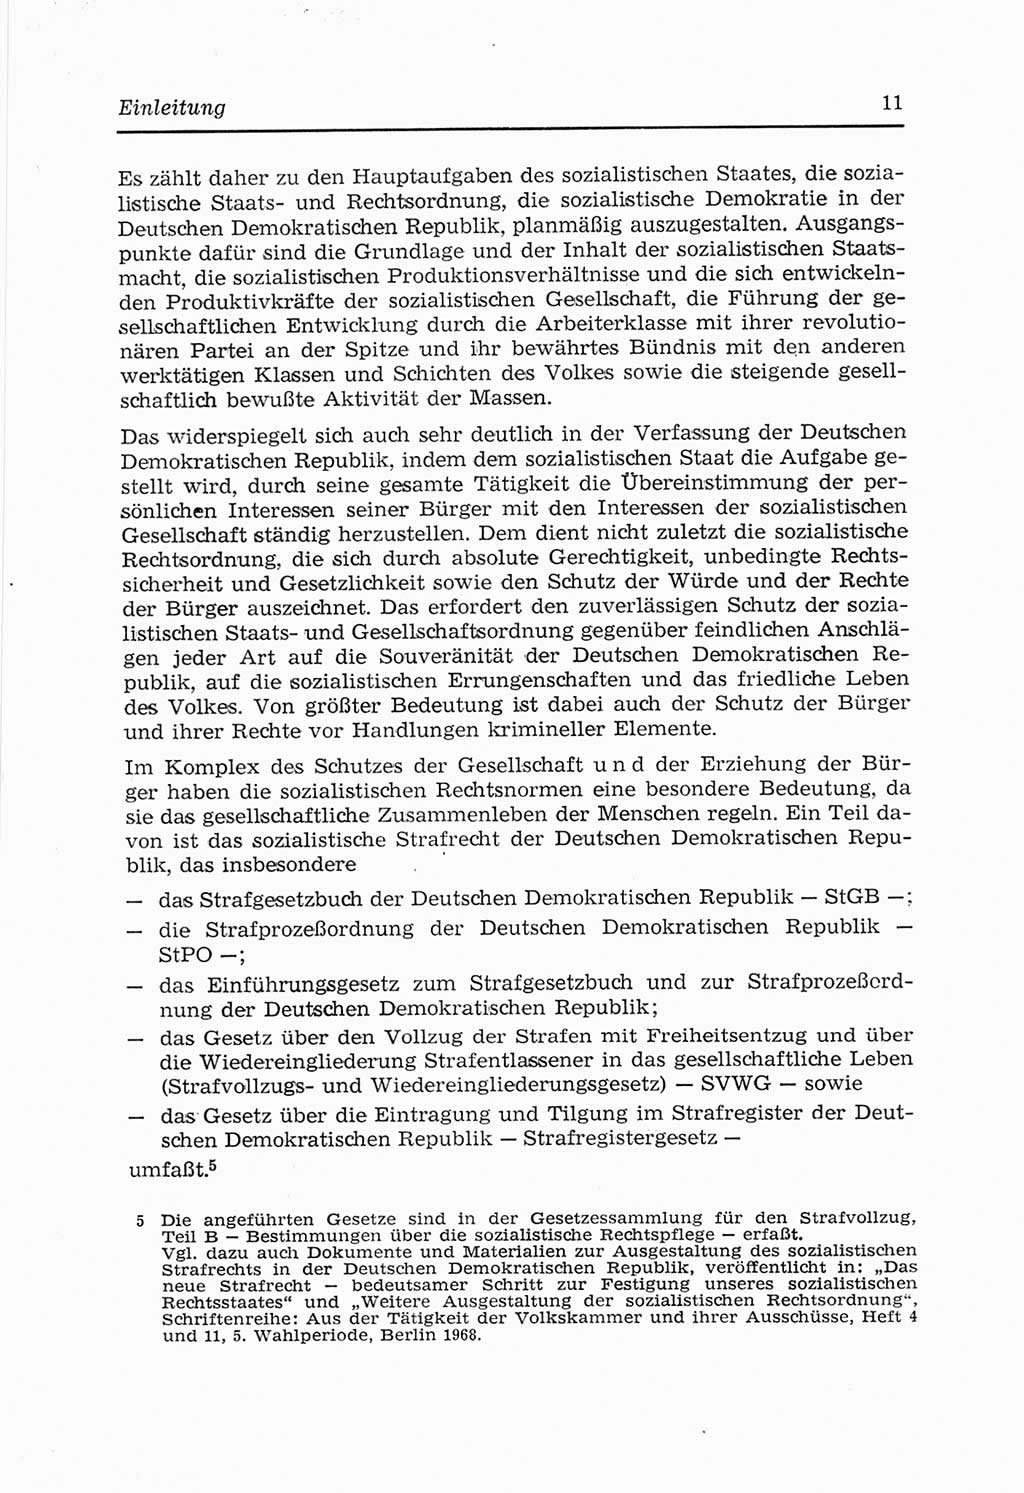 Strafvollzugs- und Wiedereingliederungsgesetz (SVWG) der Deutschen Demokratischen Republik (DDR) 1968, Seite 11 (SVWG DDR 1968, S. 11)